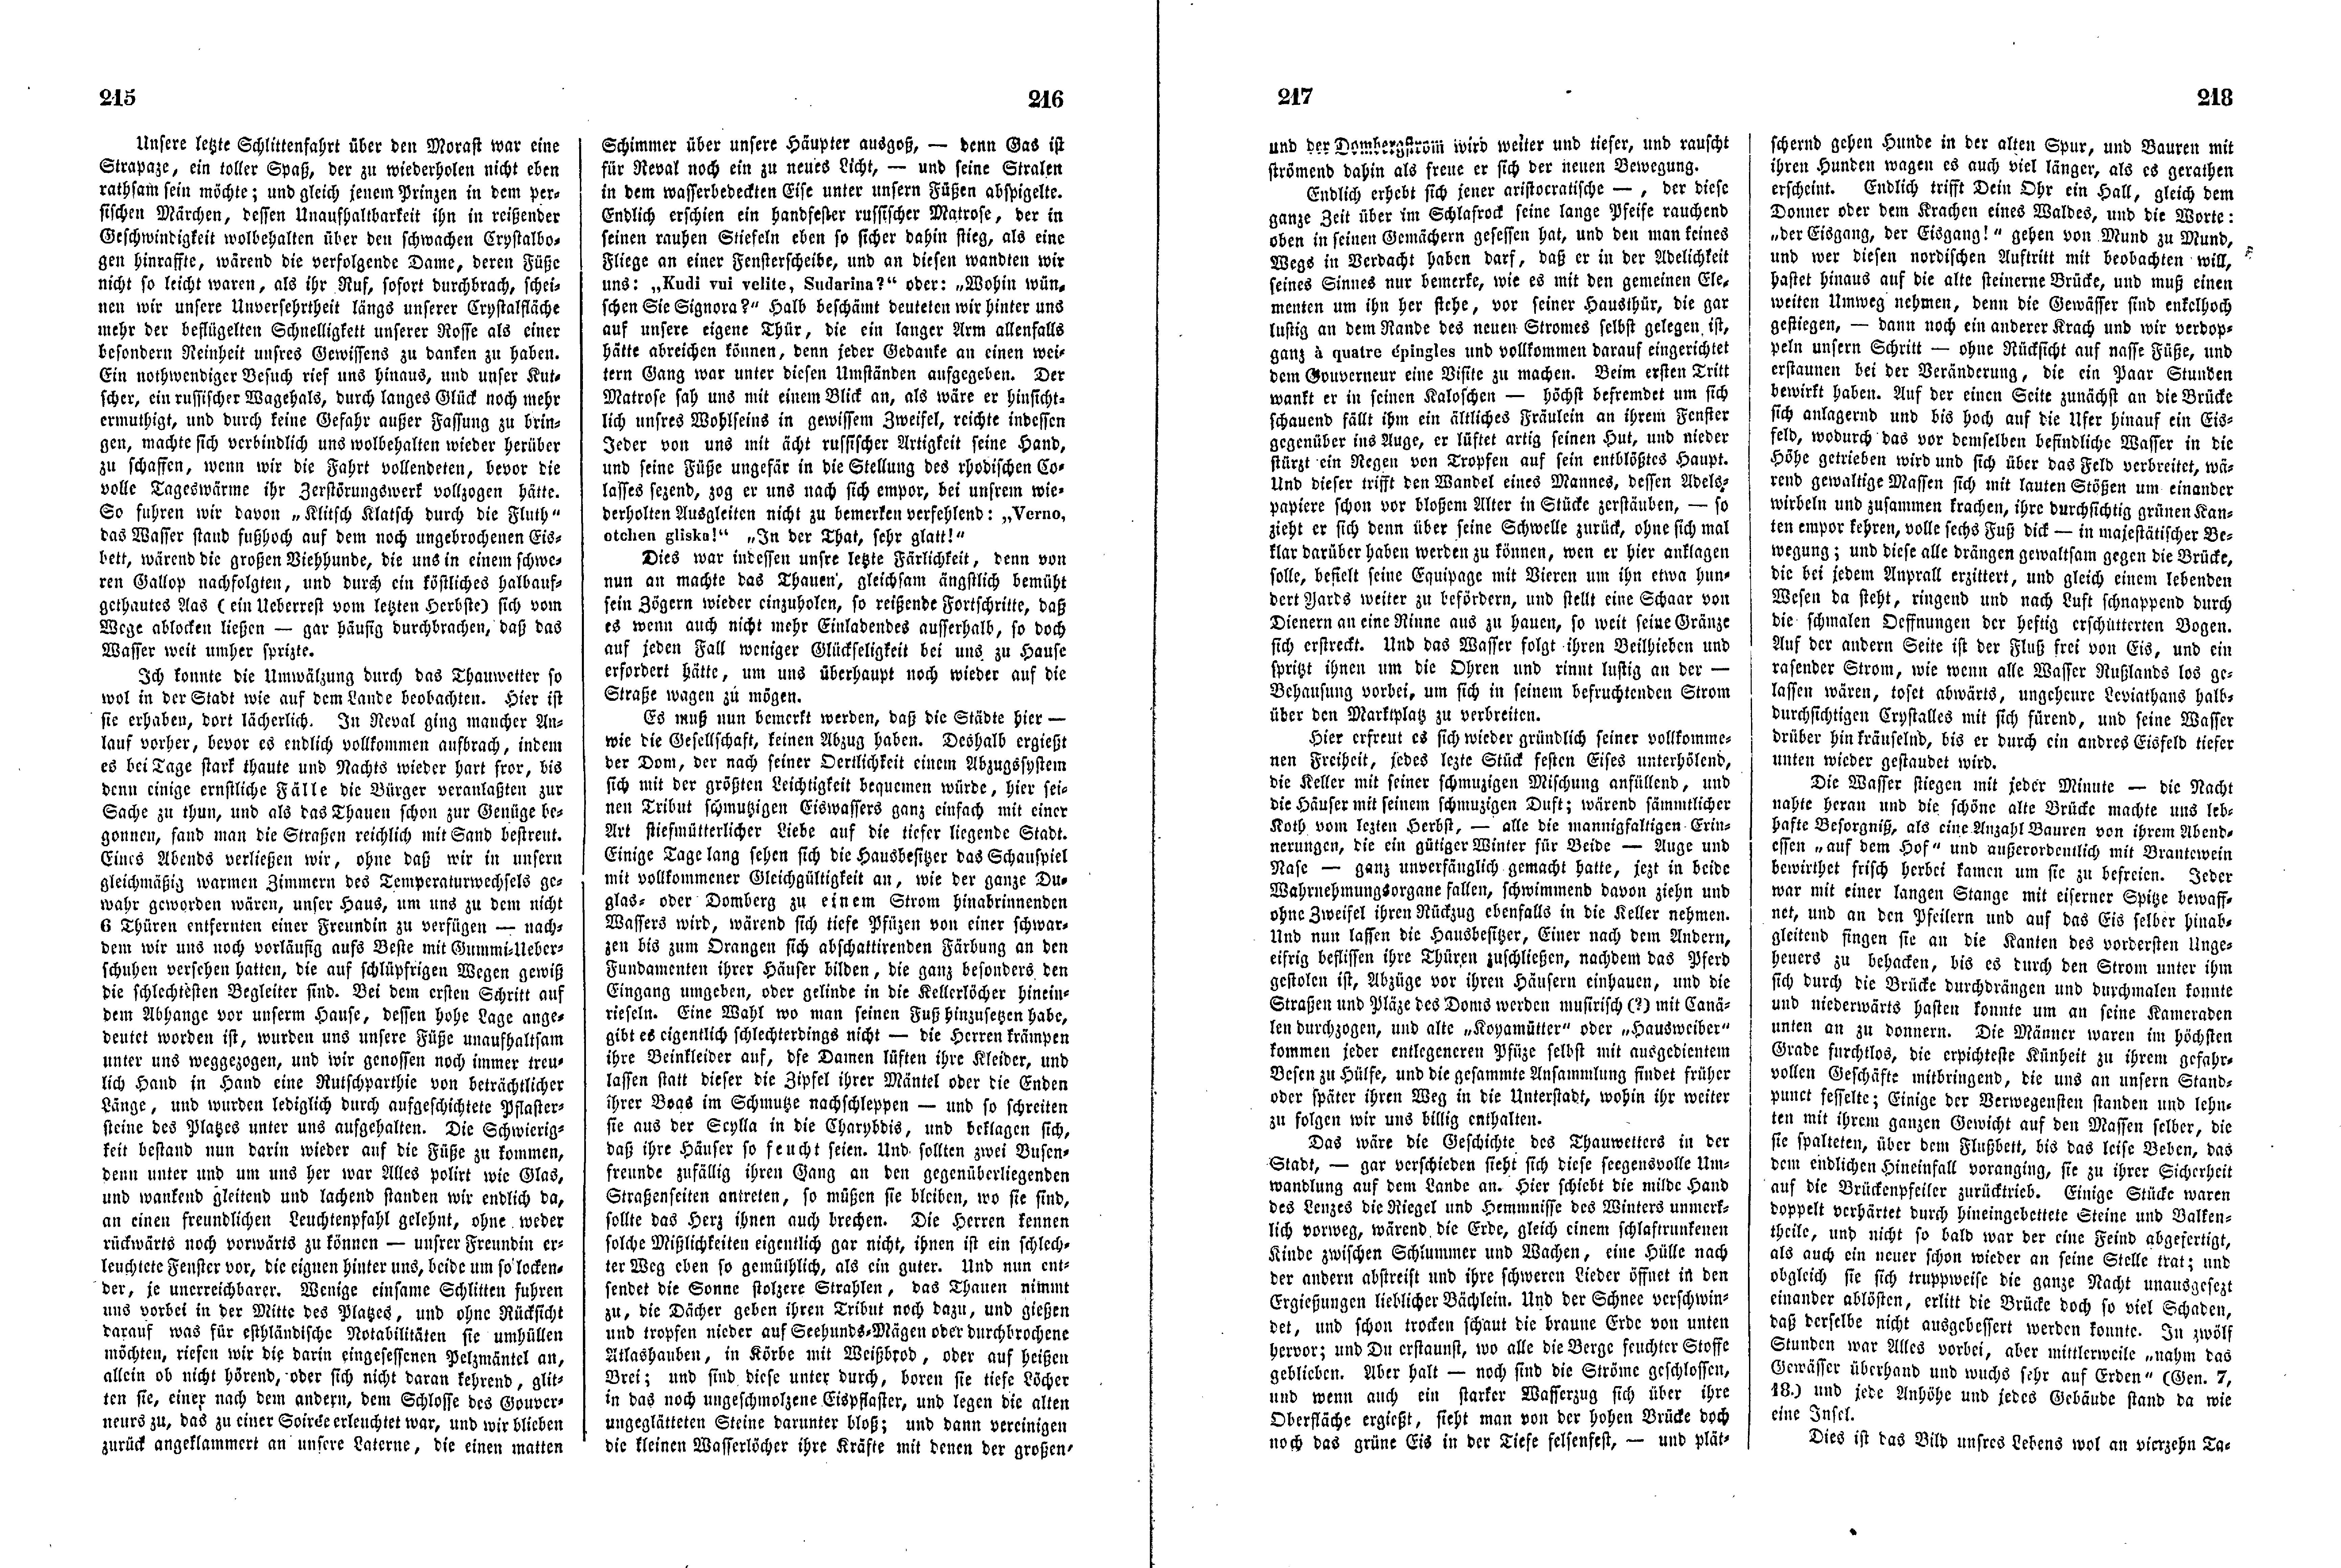 Das Inland [11] (1846) | 59. (215-218) Haupttext